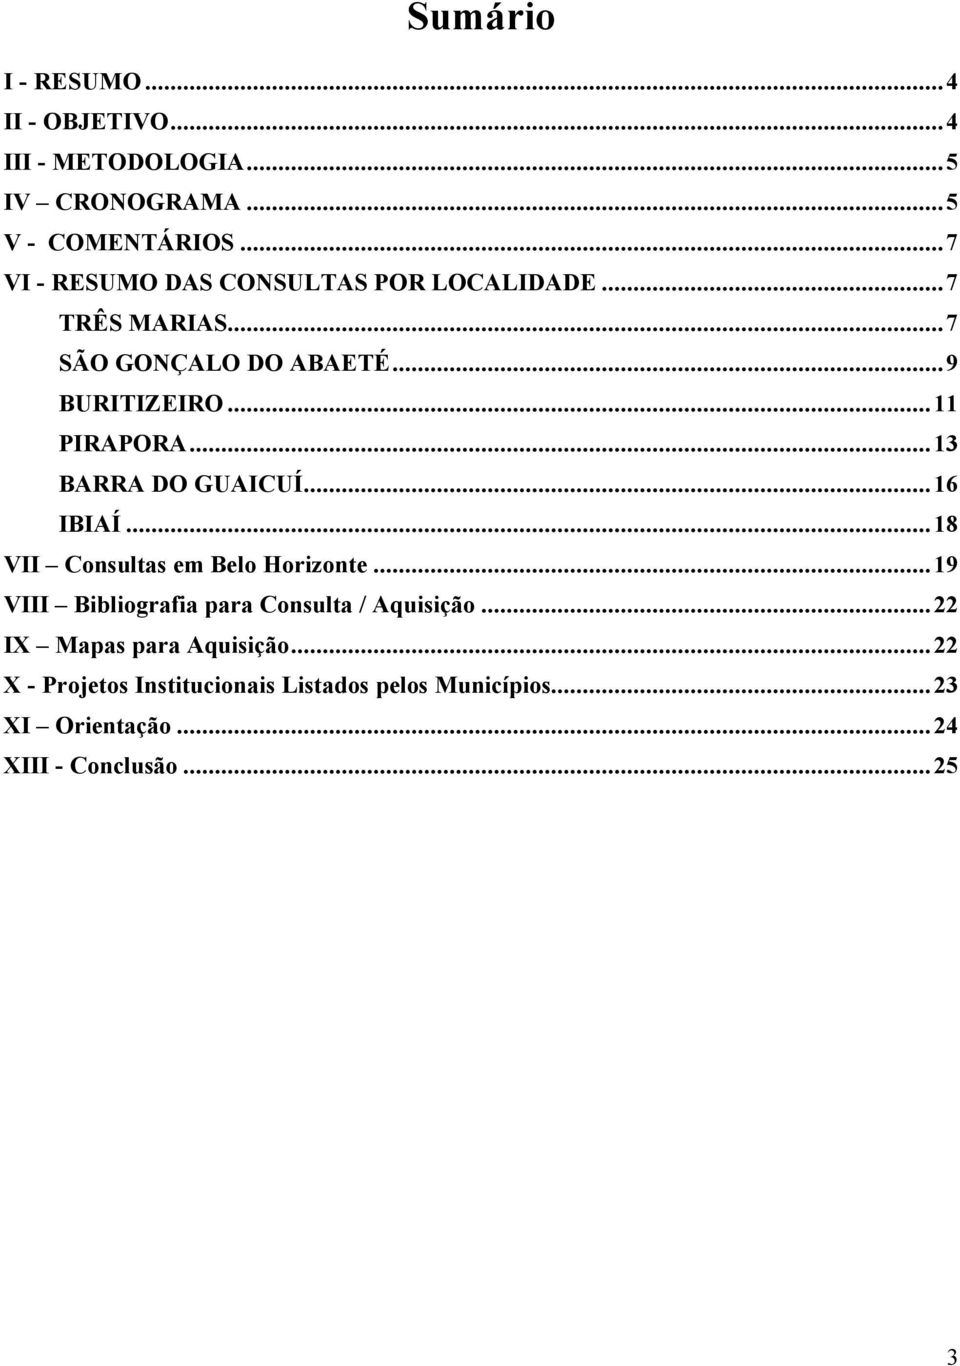 ..13 BARRA DO GUAICUÍ...16 IBIAÍ...18 VII Consultas em Belo Horizonte...19 VIII Bibliografia para Consulta / Aquisição.